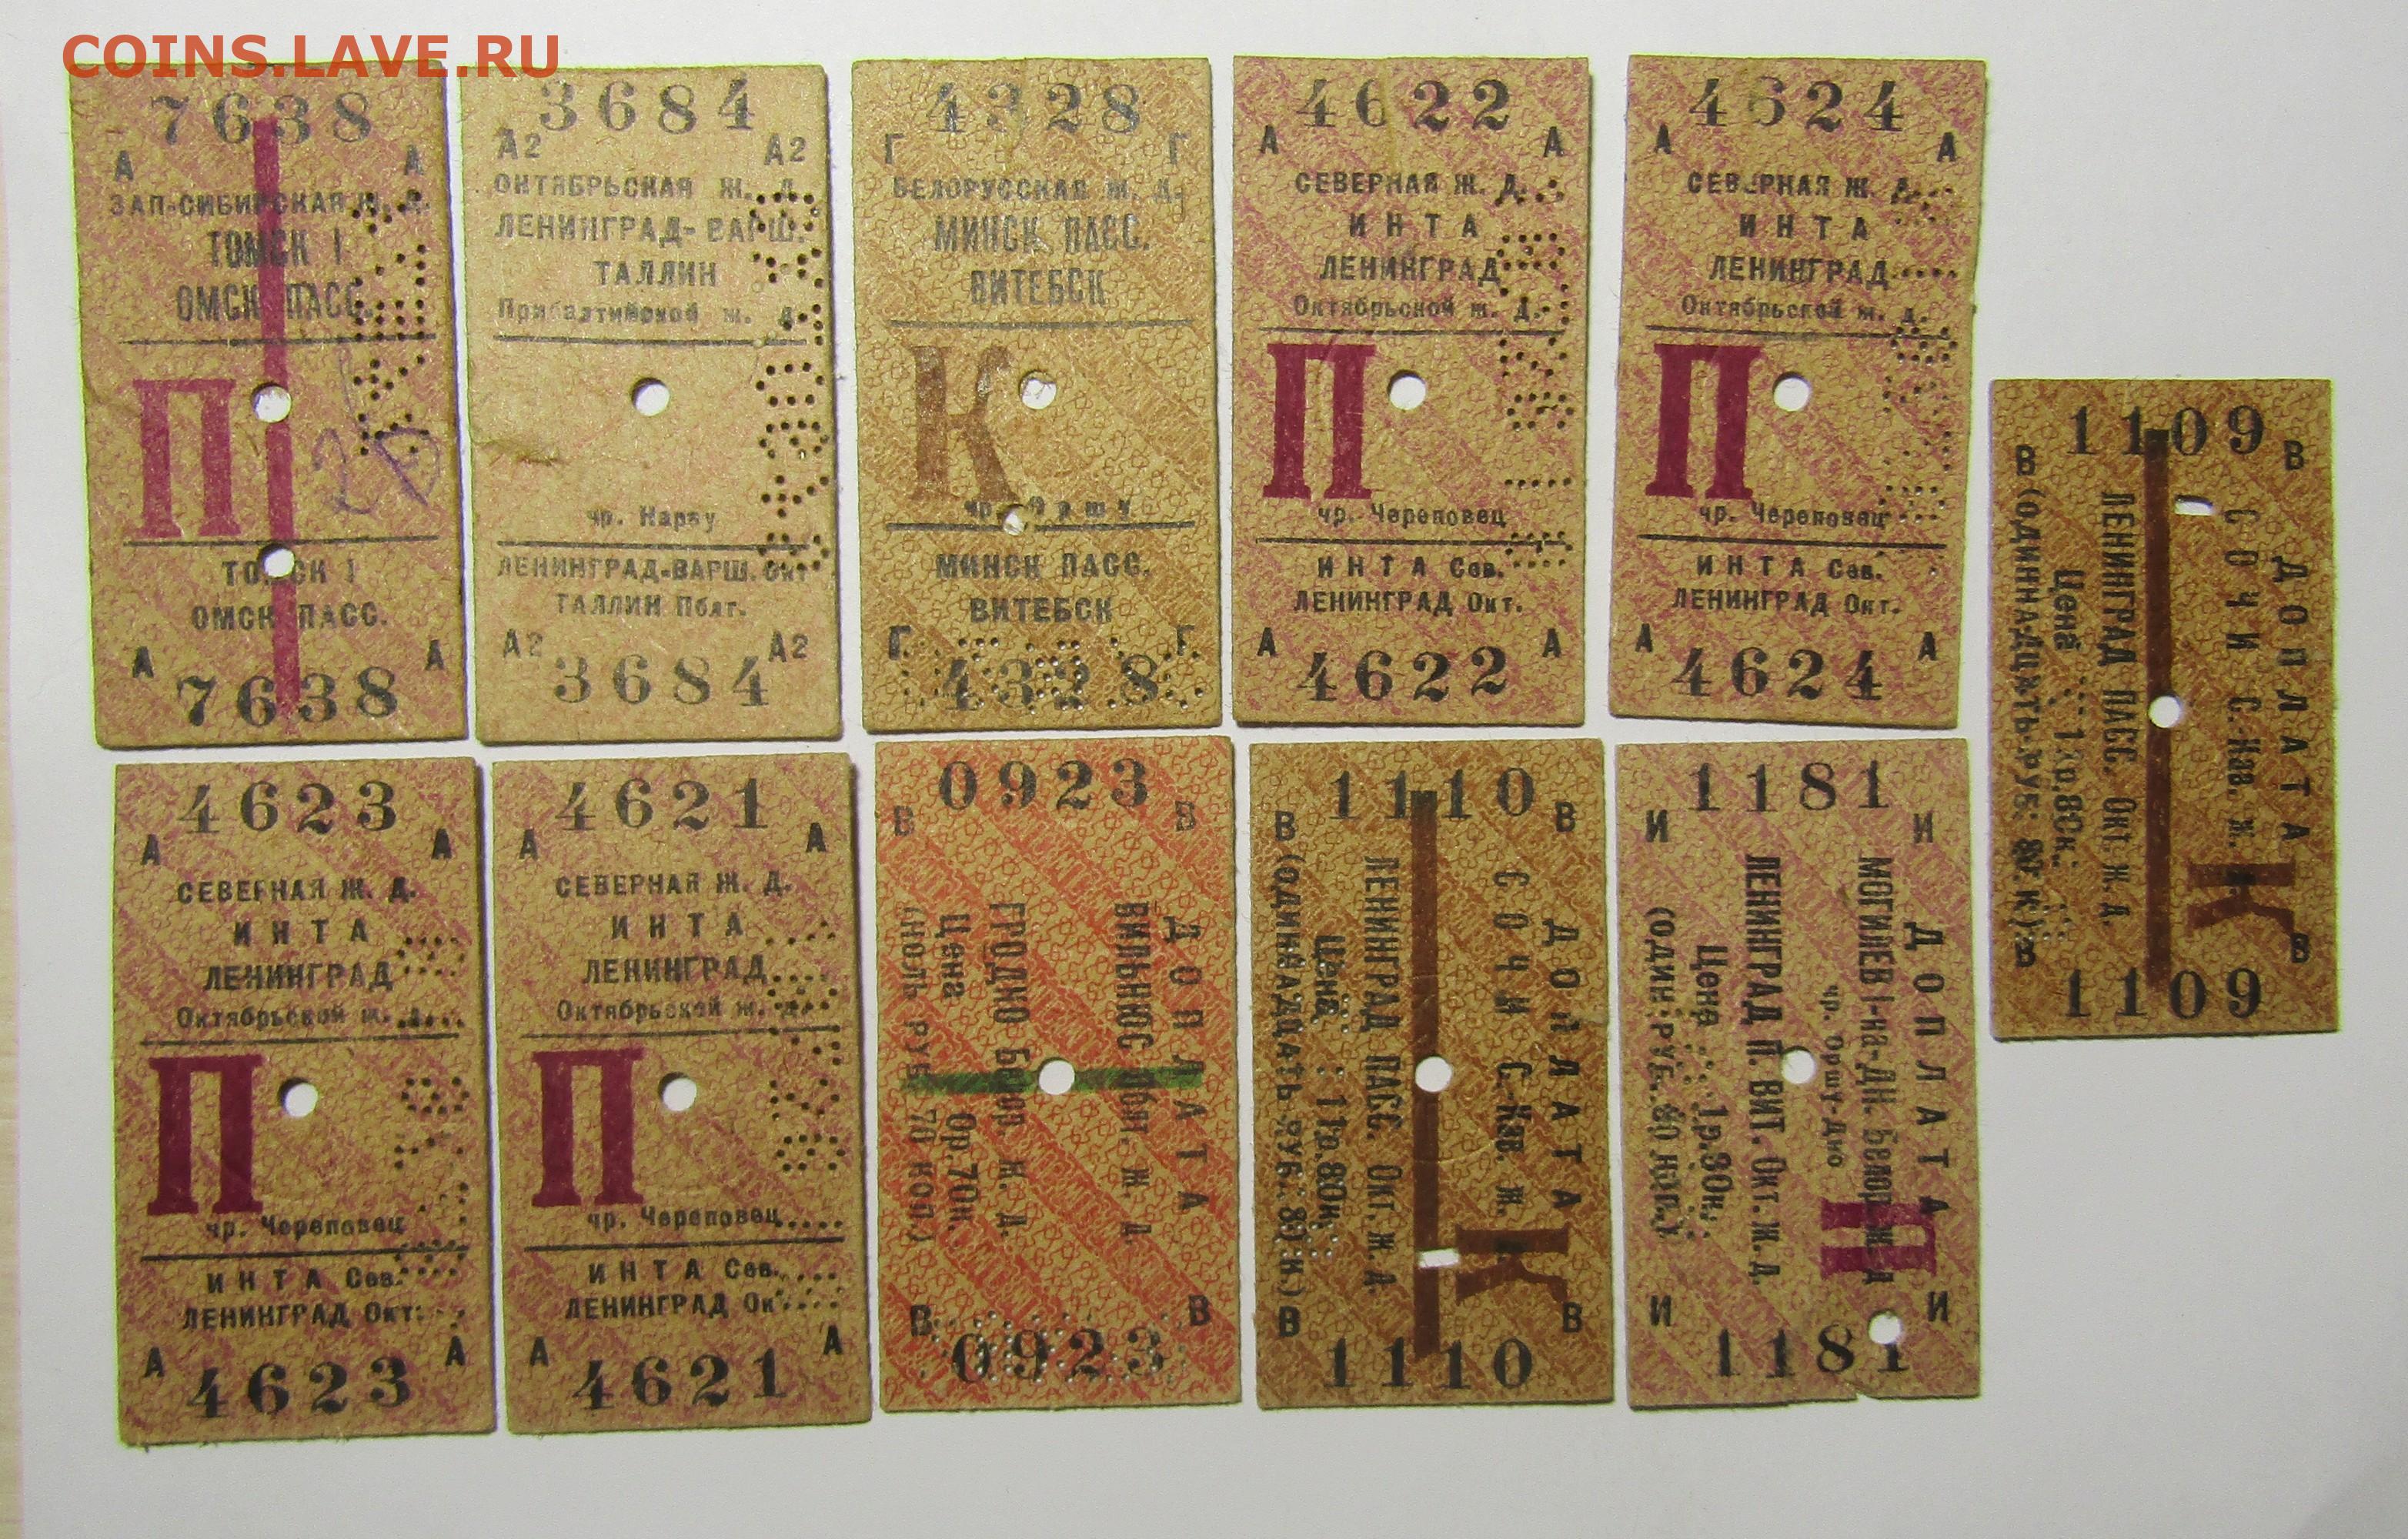 Билет на поезд брюховецкая. Старый билет. Советские железнодорожные билеты. Железнодорожный билет СССР. Старые железнодорожные билеты.